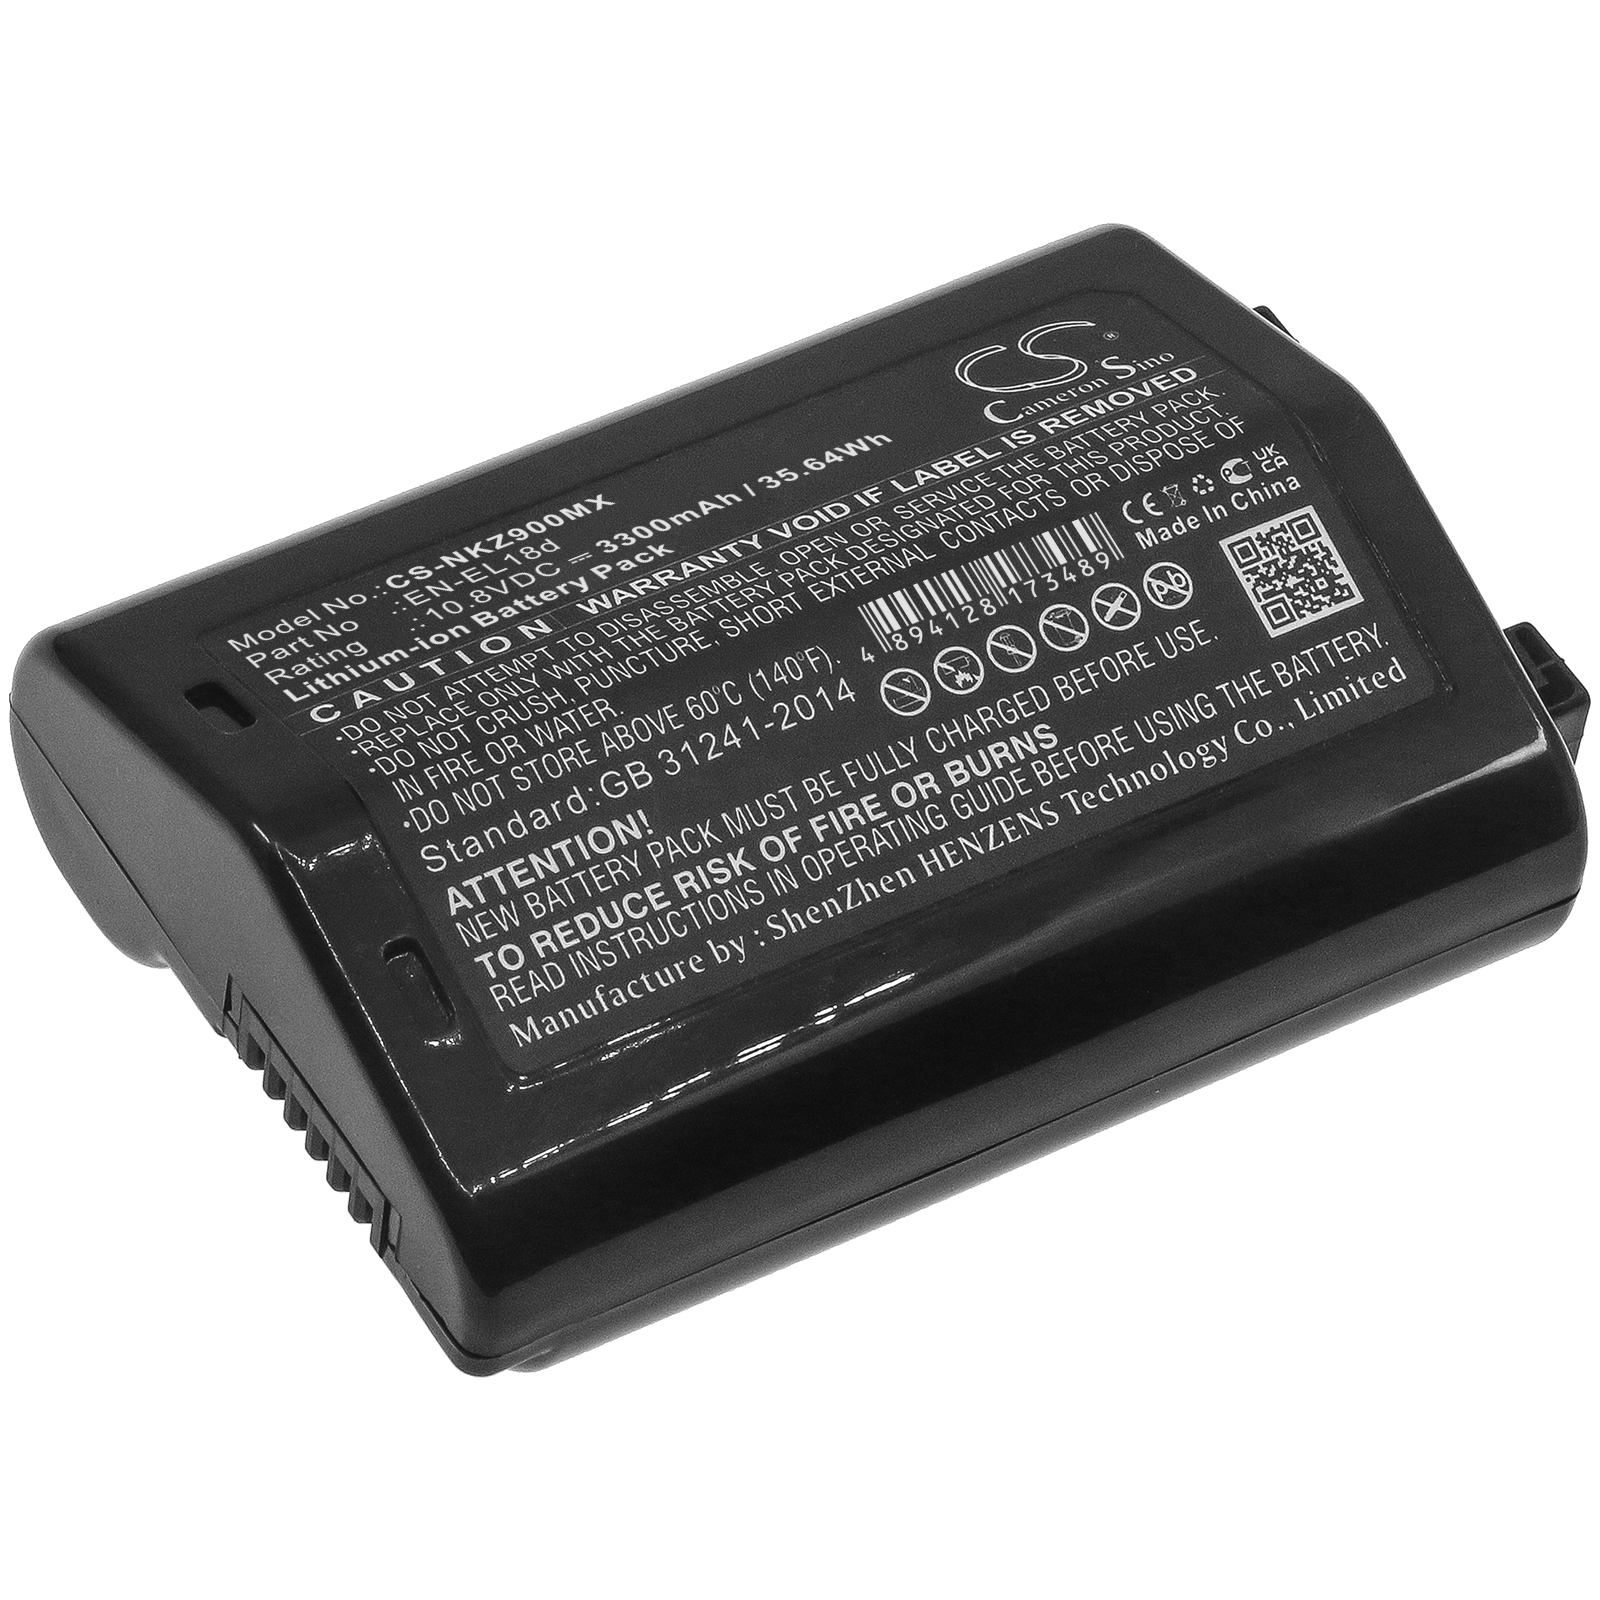 Cameron Sino Battery for NIKON D6 D4 D4s D5 Z9 EN-EL18d Camera CS-NKZ900MX 10.8v 3300mAh